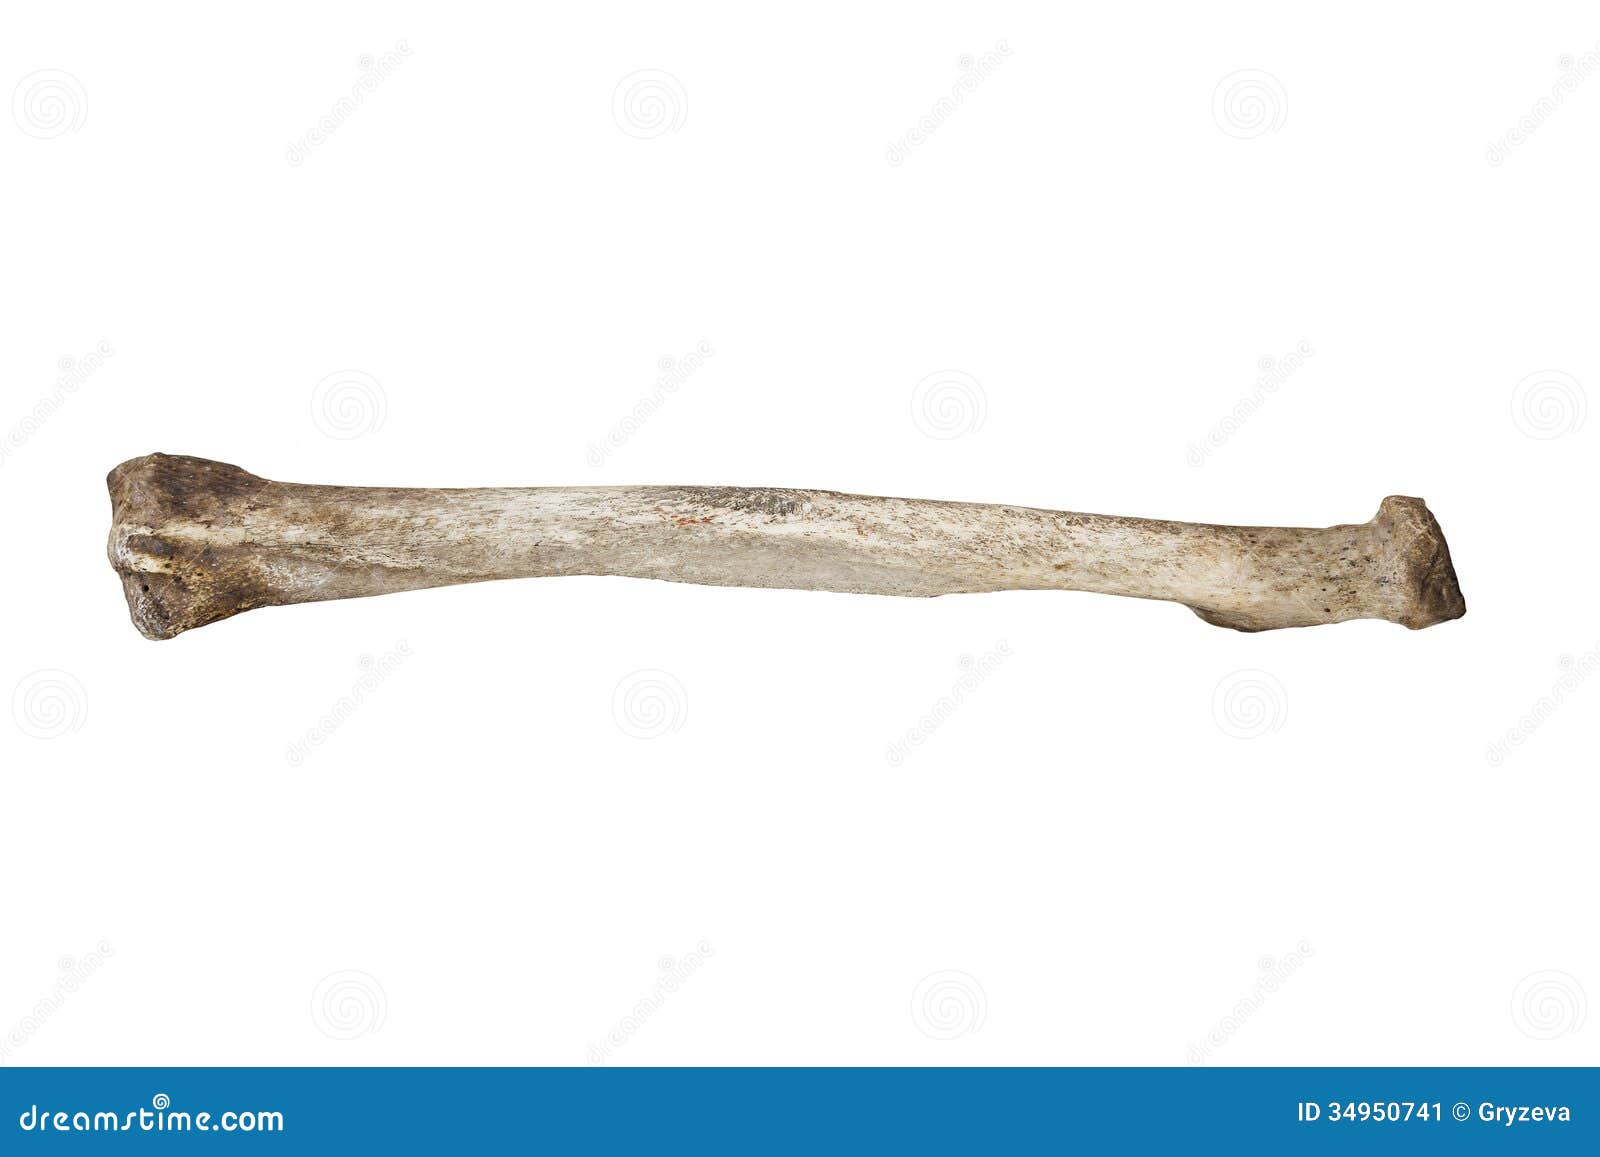 Elder bone. Кость на белом фоне. Текстура древней кости.